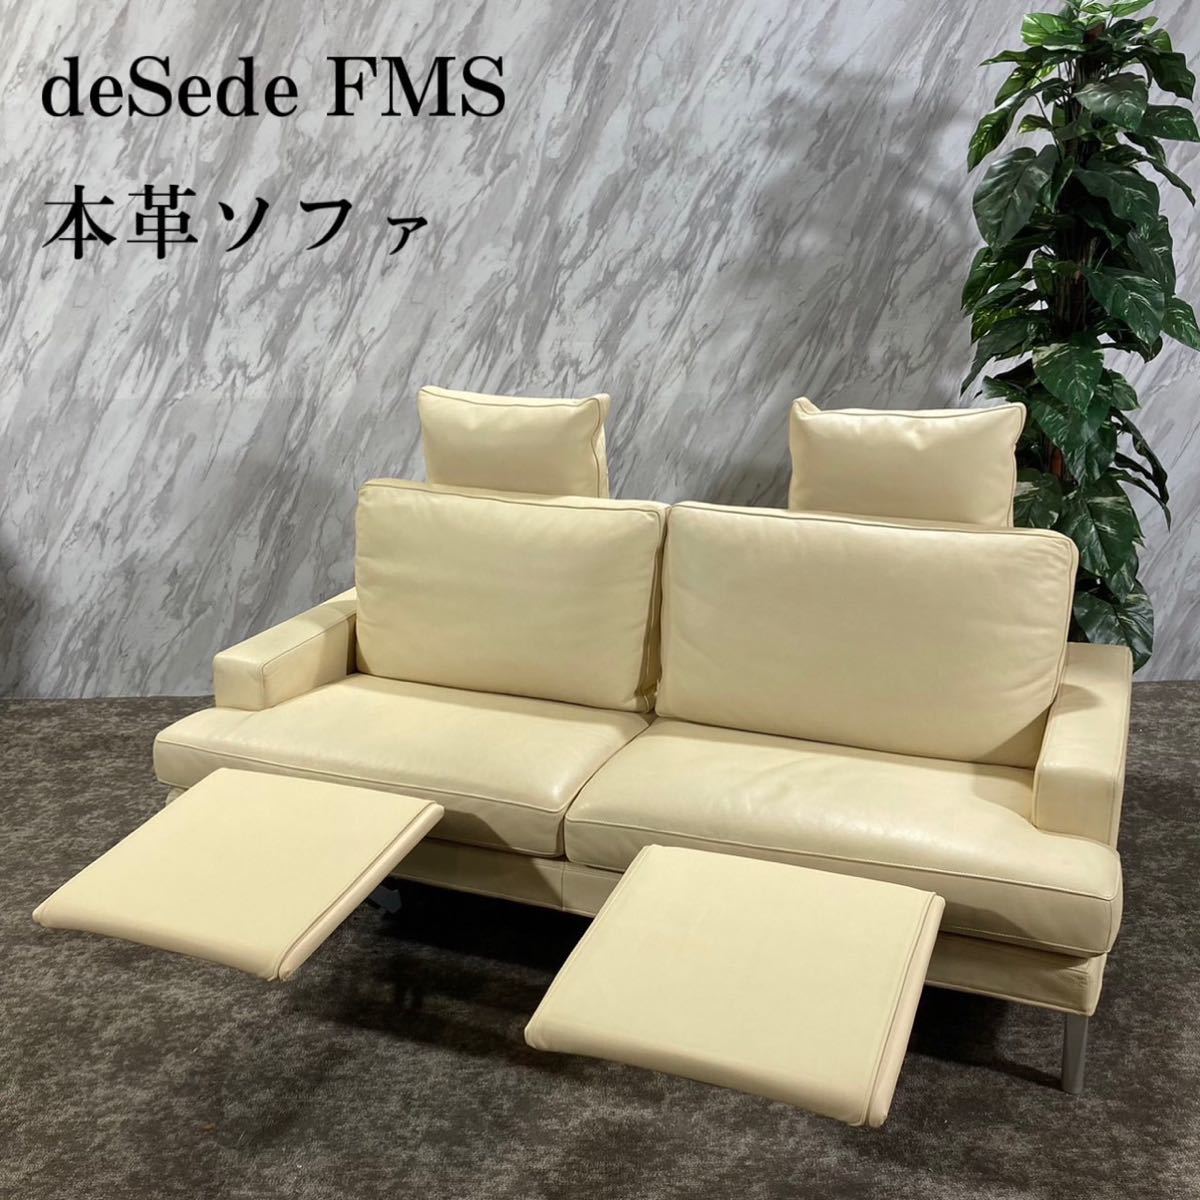 deSede デセデ FMS 本革ソファ Clarus 2人掛け 高級 F135